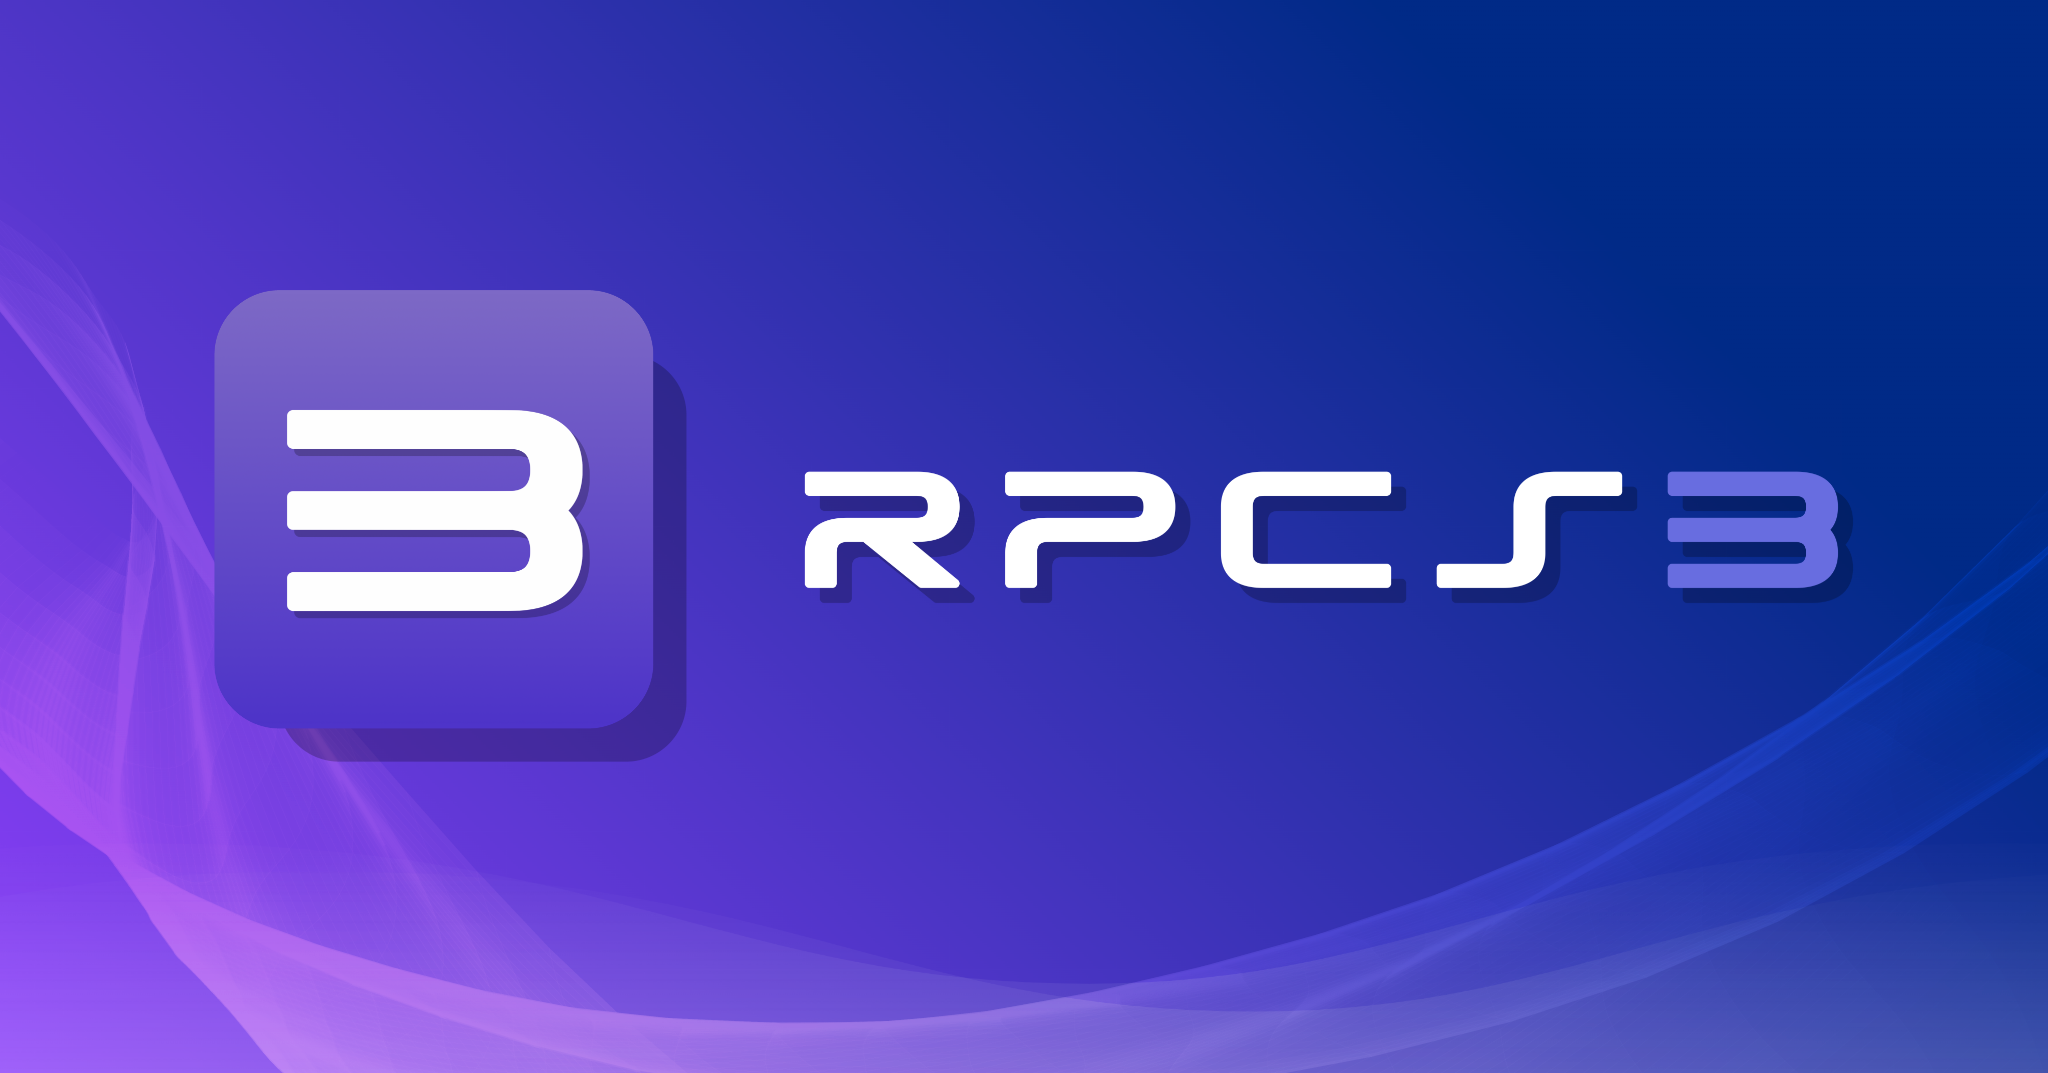 rpcs3-emulator-update.apk